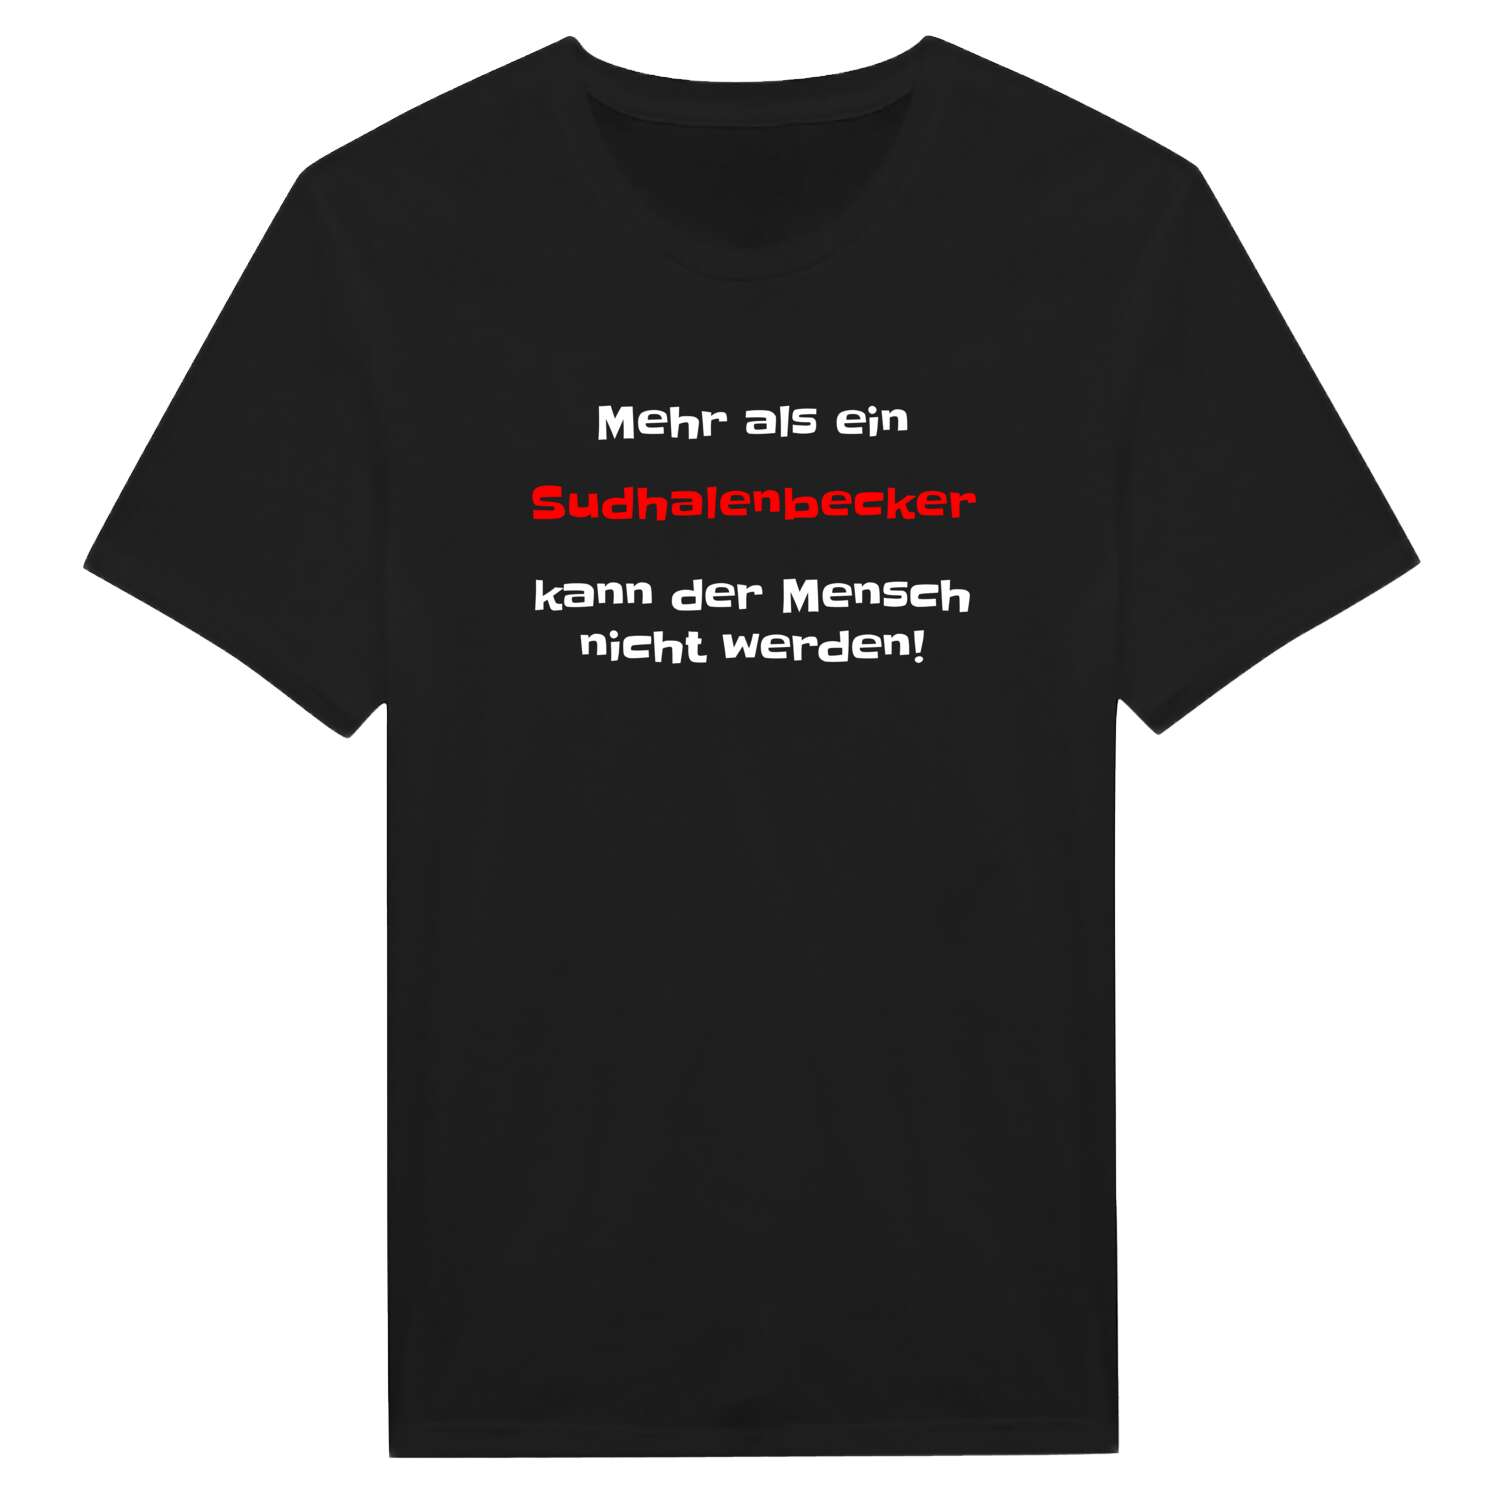 Sudhalenbeck T-Shirt »Mehr als ein«